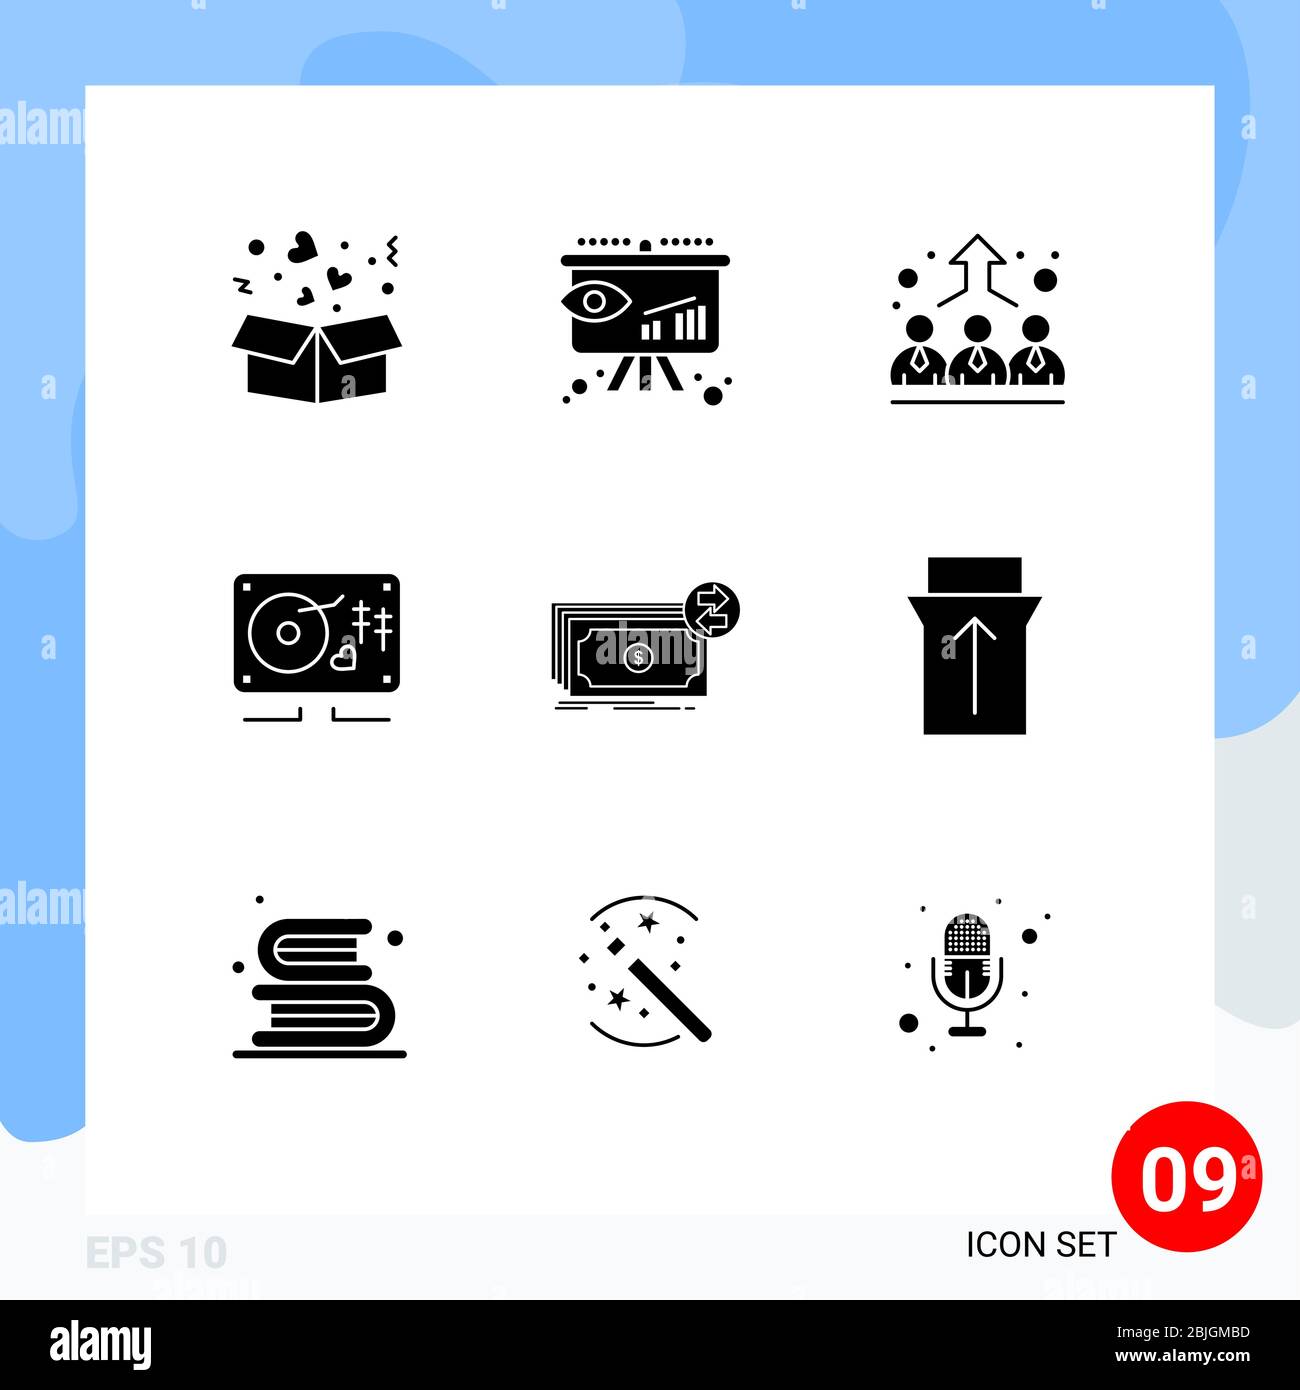 9 icone creative segni moderni e simboli di denaro, matrimonio, affari, cuore, musica elementi di design vettoriale editabili Illustrazione Vettoriale